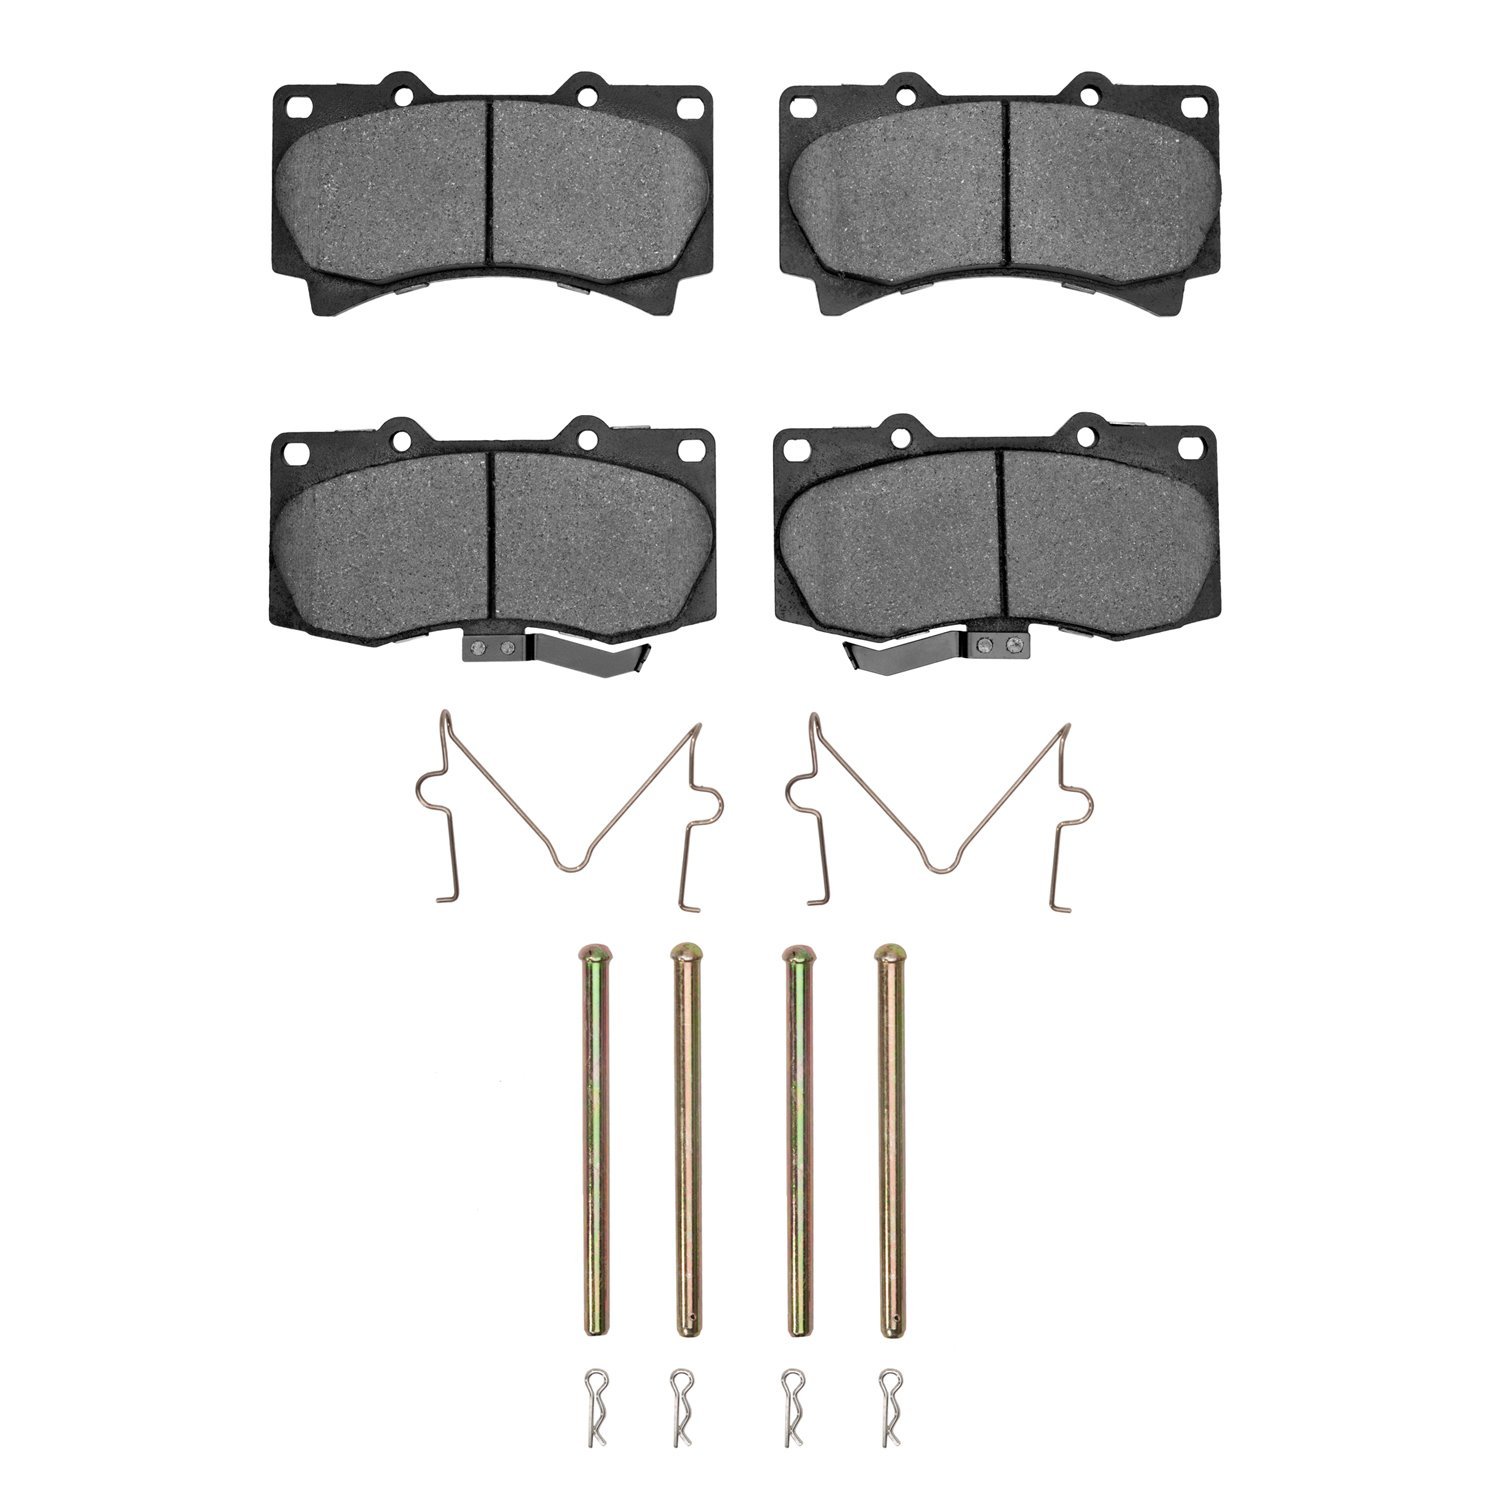 1310-1119-01 3000-Series Ceramic Brake Pads & Hardware Kit, 2006-2010 GM, Position: Front